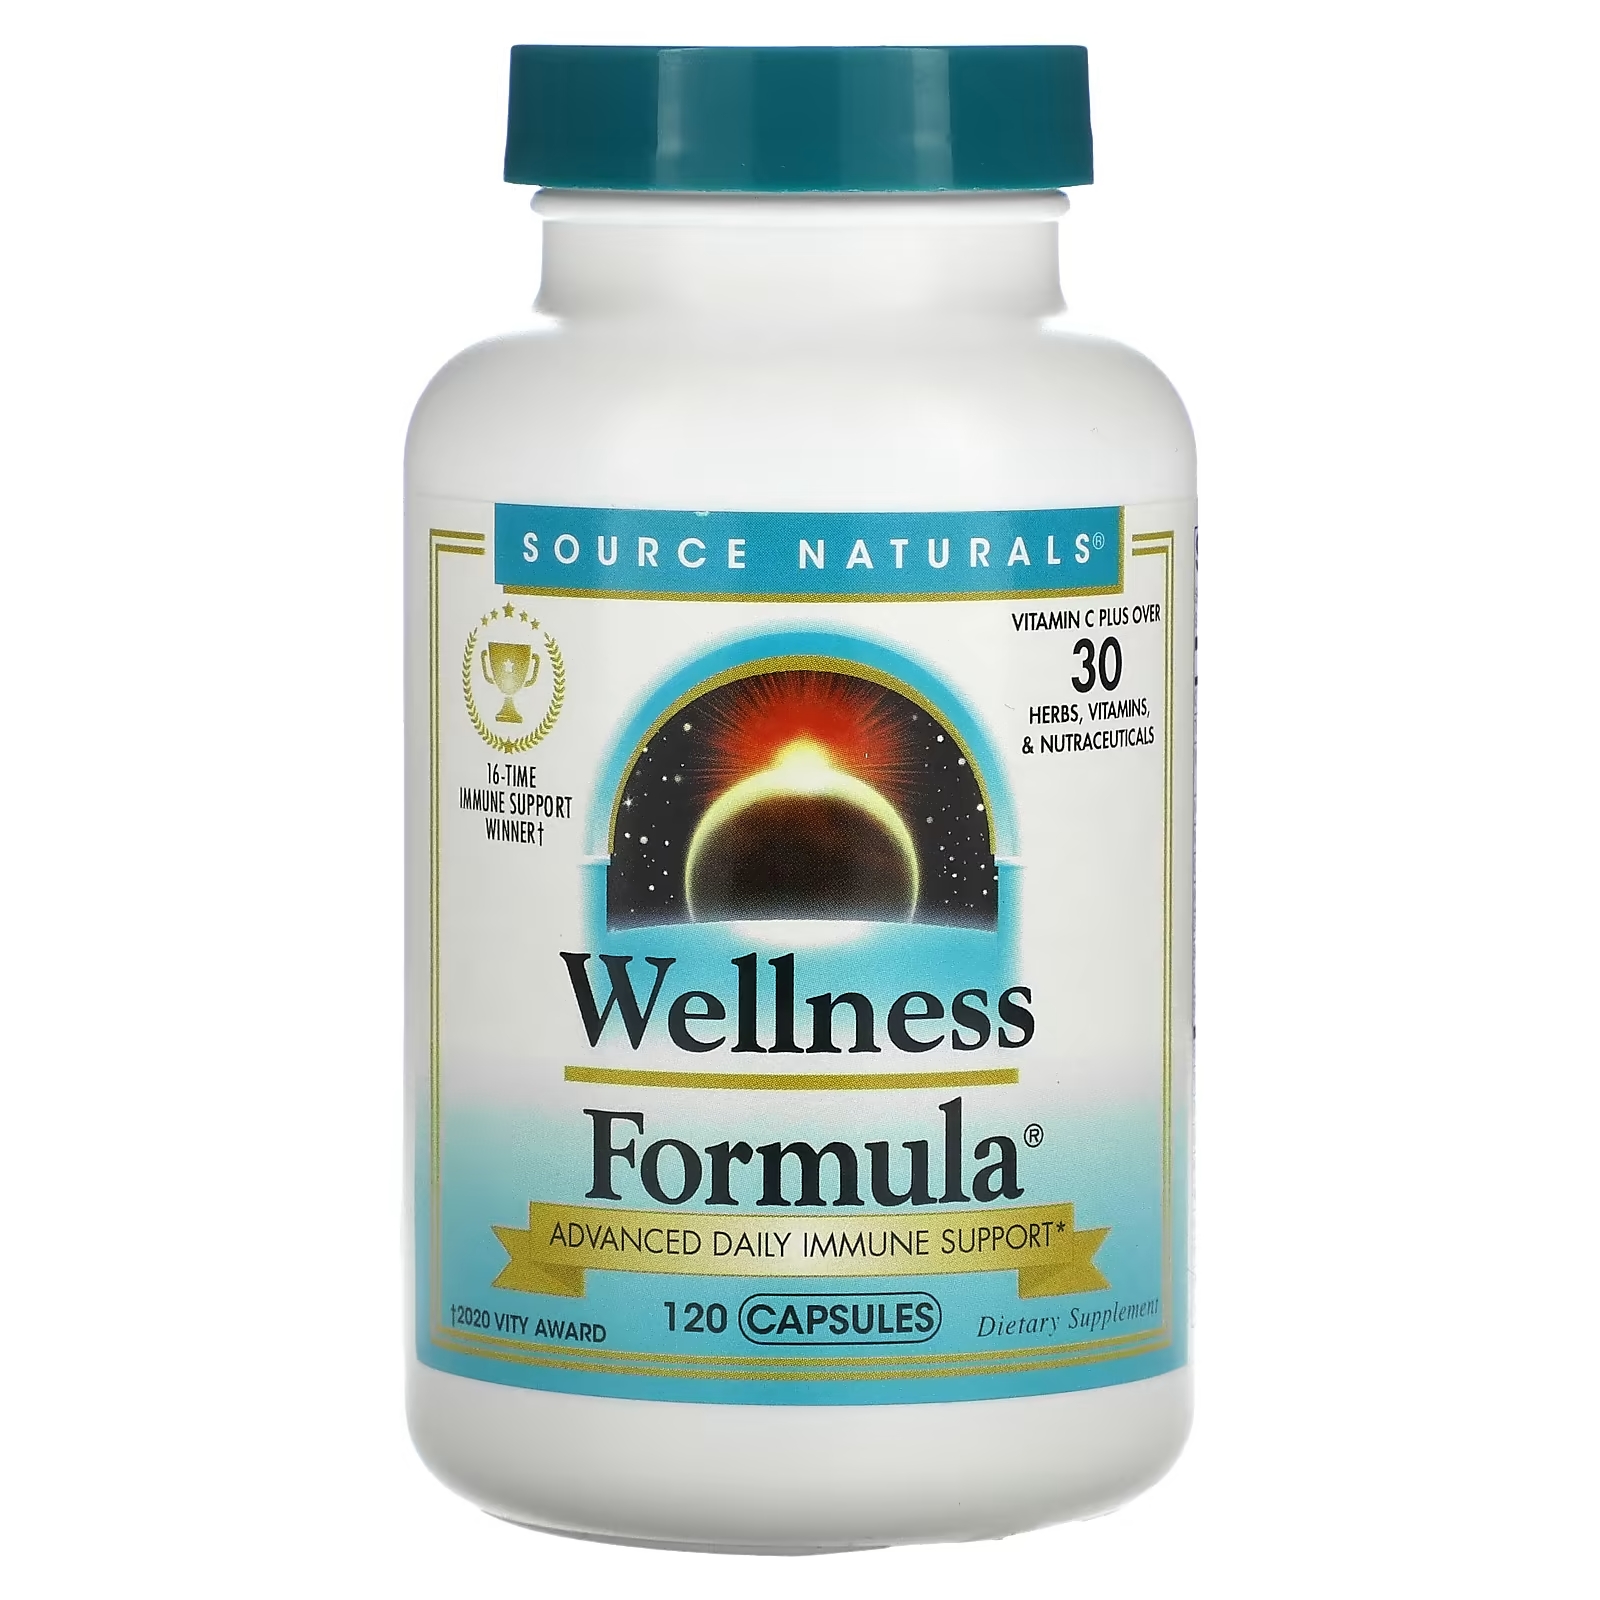 Source Naturals Wellness Formula, 120 капсул source naturals wellness formula ежедневная иммунная поддержка 240 капсул